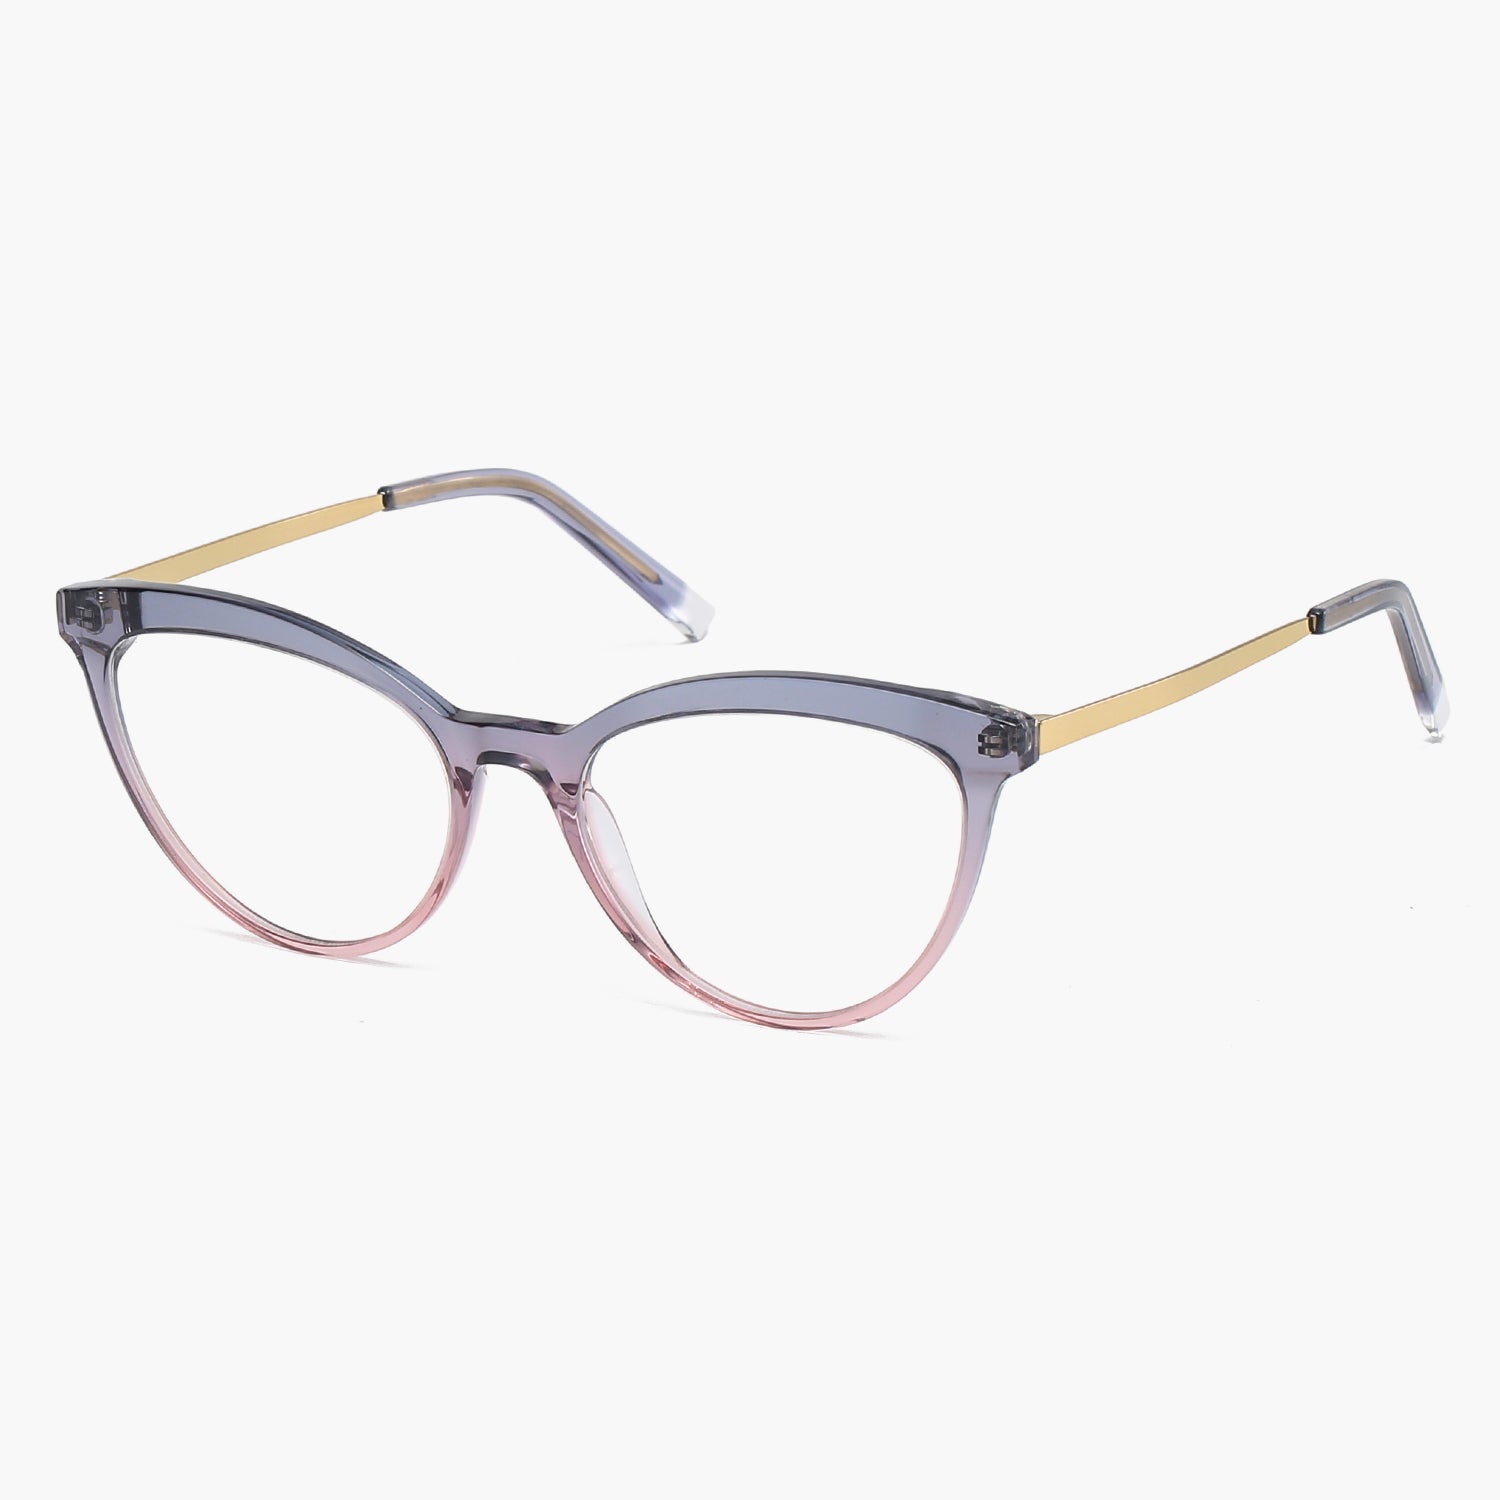 Buy Clear Cat Eye Glasses Frame Prescription Glasses For Women Online Rollin Sojos Vision